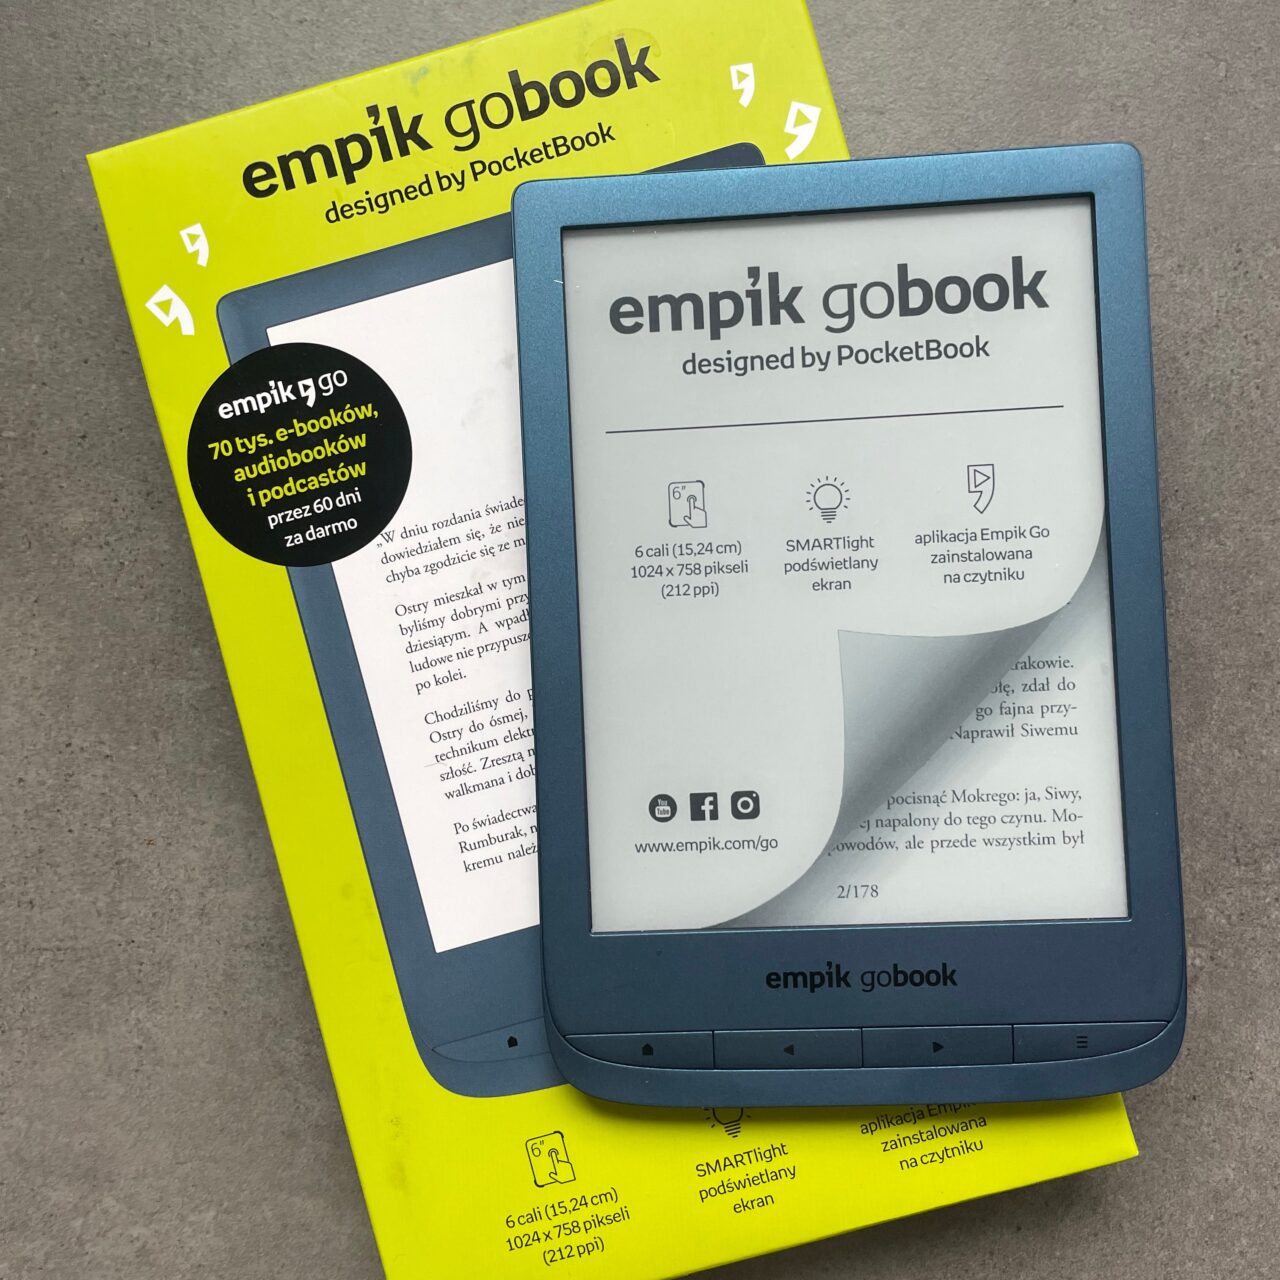 Czytnik e-booków Empik GoBook zaprojektowany przez PocketBook, leżący na opakowaniu, z widocznym ekranem startowym i informacjami o urządzeniu.